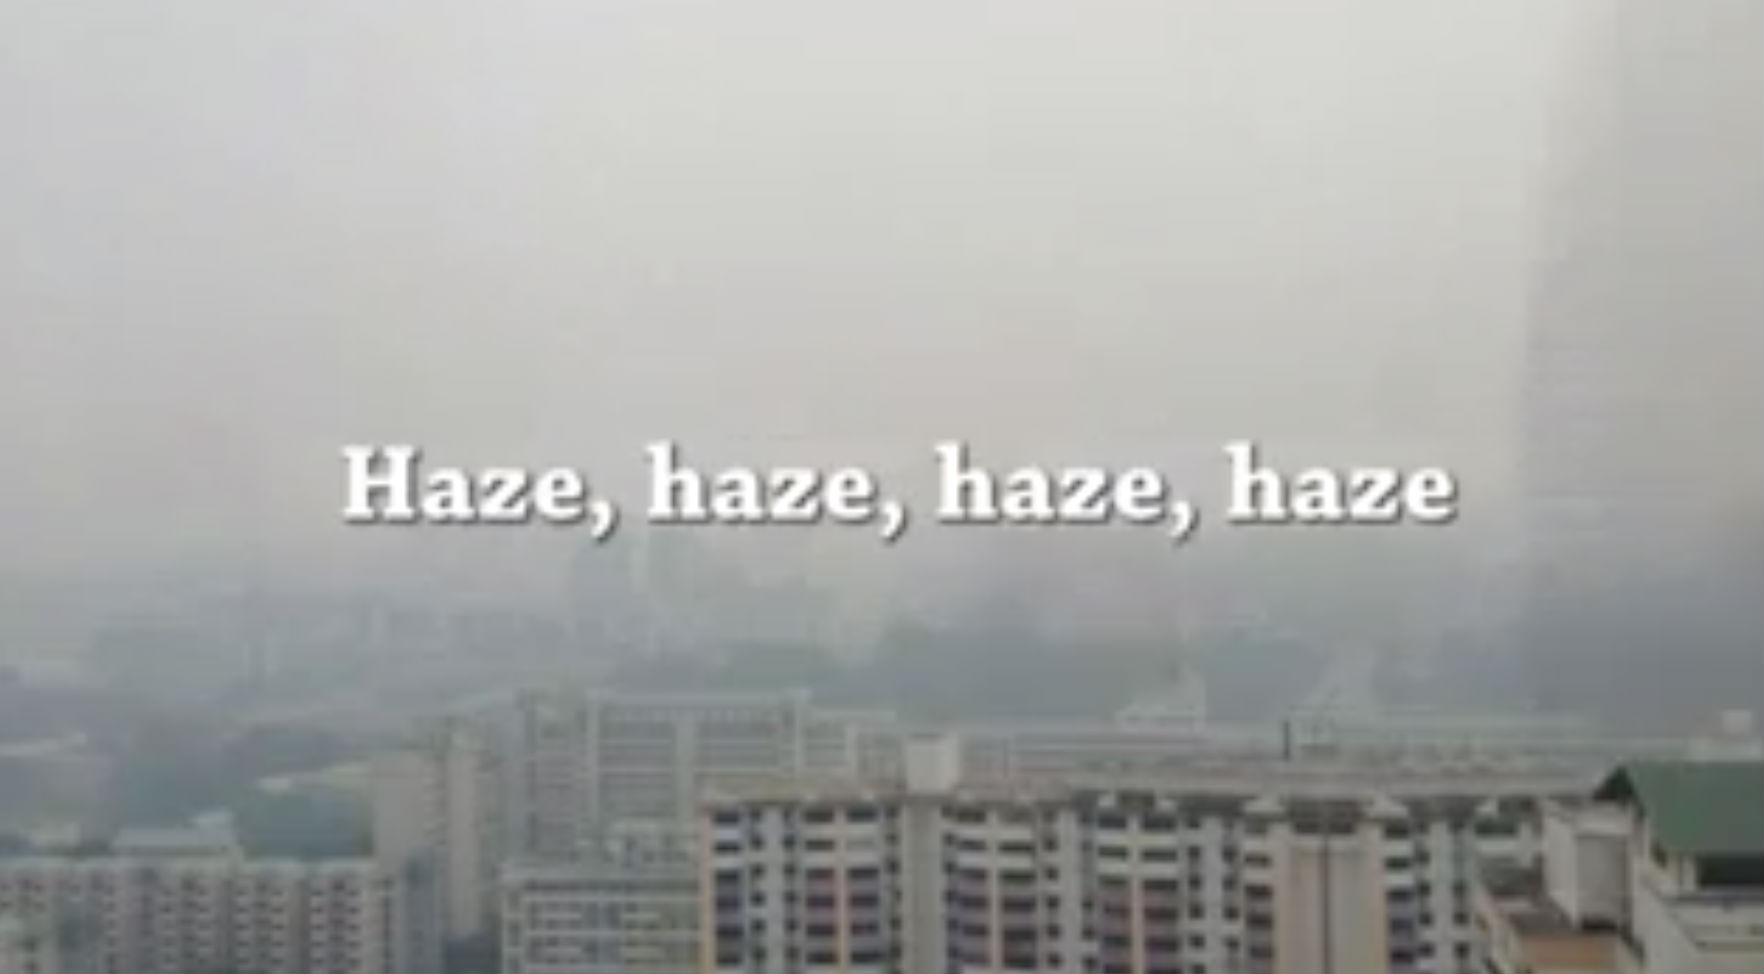 Screenshot of The Haze Song video.